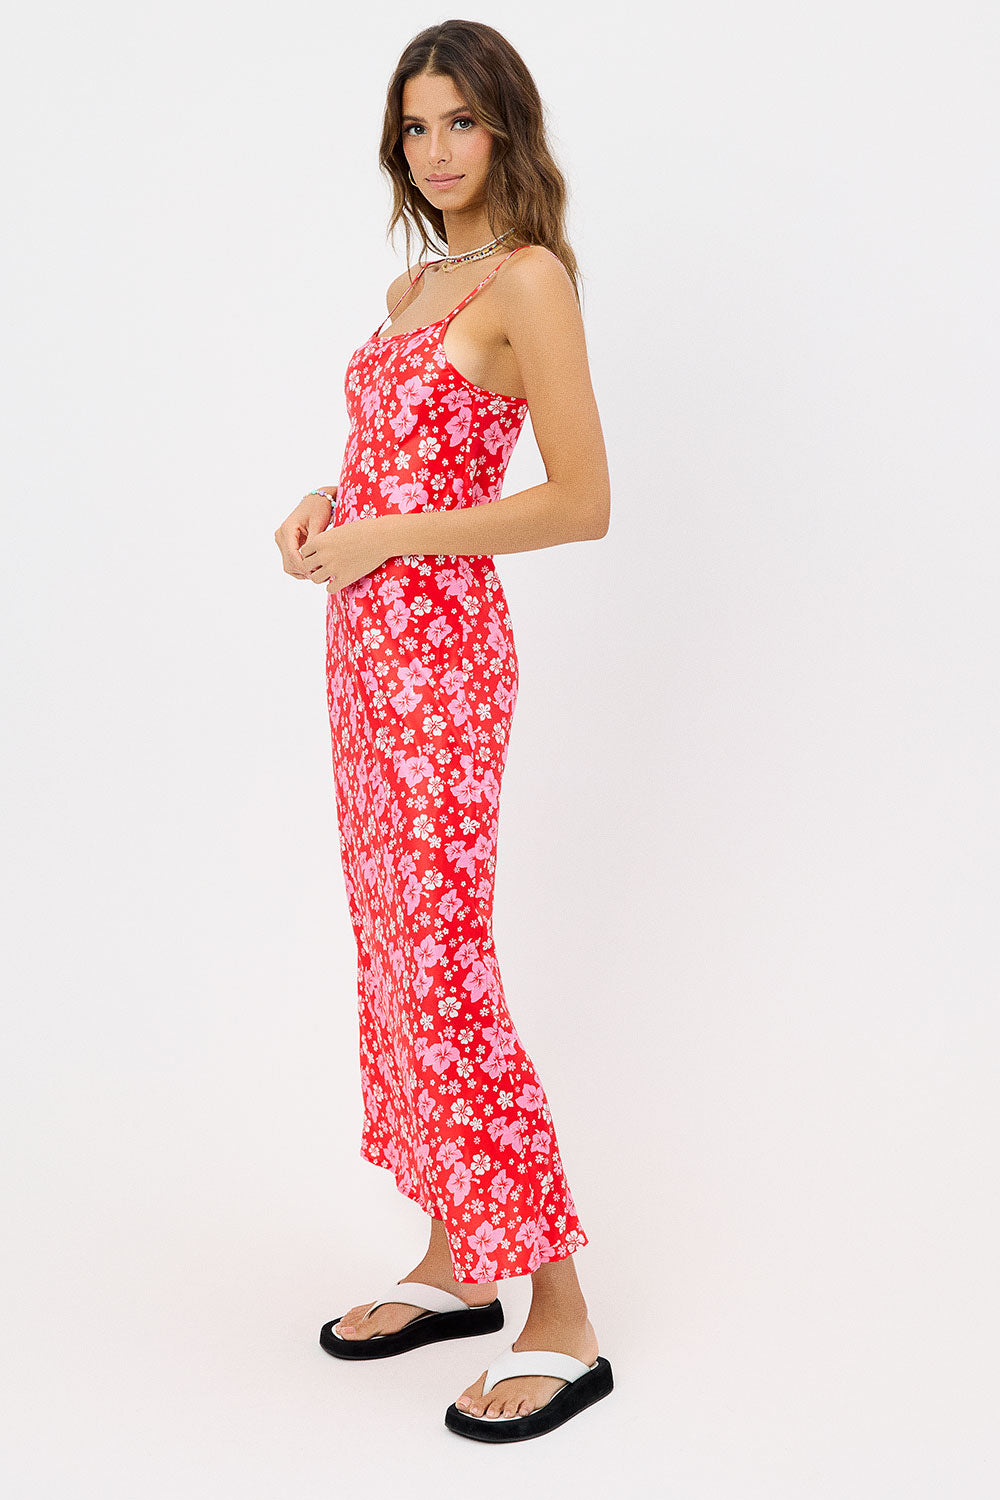 Isabel Satin Floral Dress - Coconut Girl